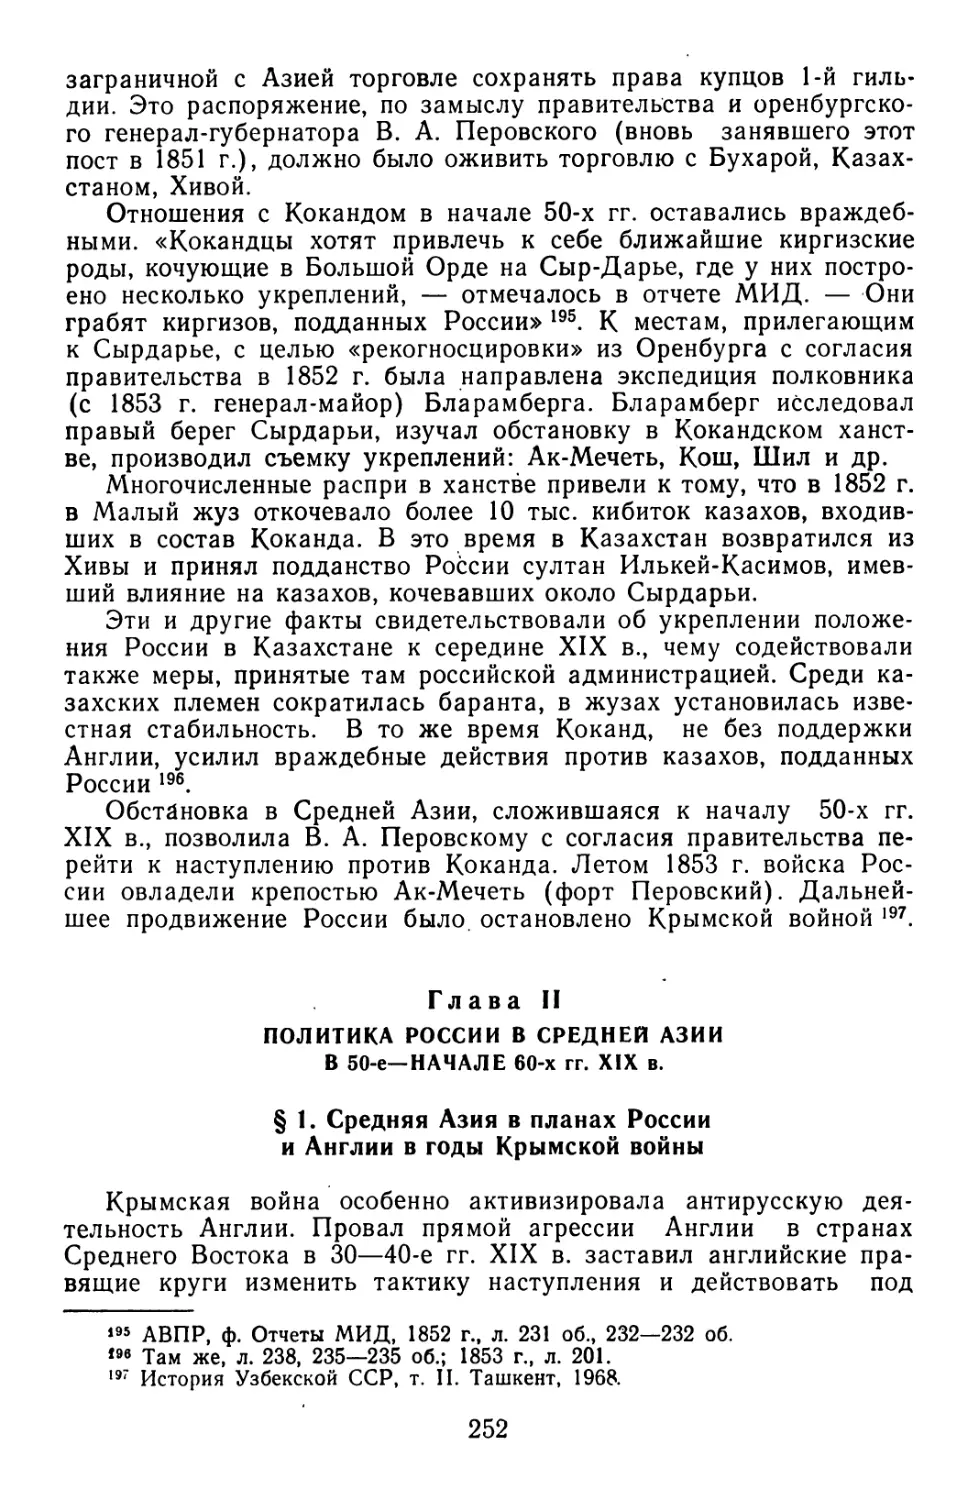 Глава II. Политика России в Средней Азии в 50-е — начале 60-х гг. XIX в.